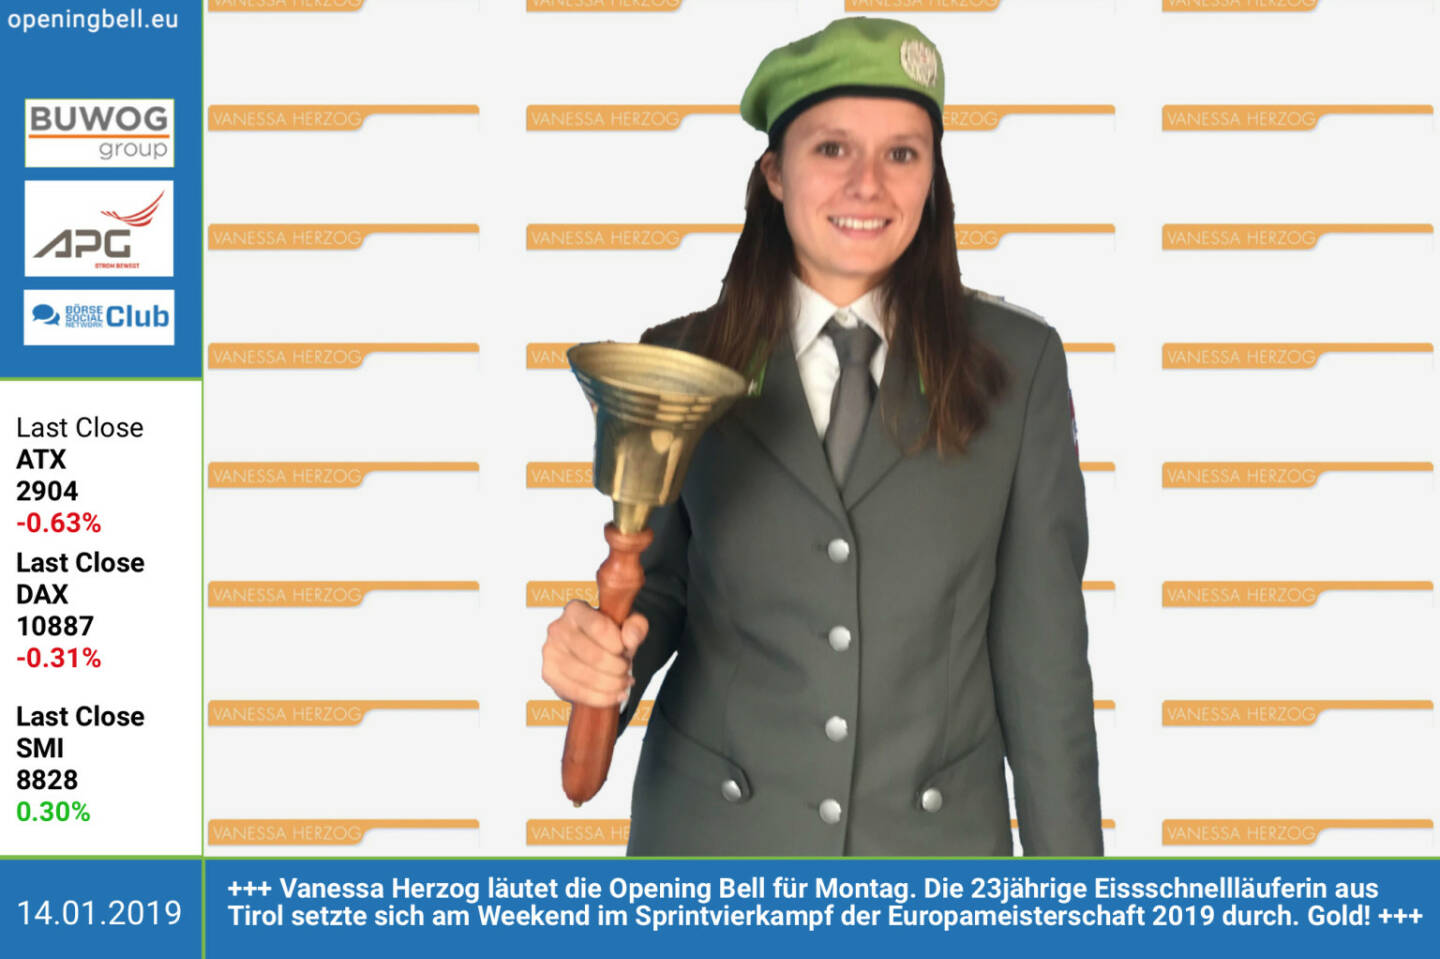 14.1.: Vanessa Herzog läutet die Opening Bell für Montag. Die 23jährige Eissschnellläuferin aus Tirol setzte sich am Wochenende im Sprintvierkampf der Europameisterschaft 2019 durch. Gold! 